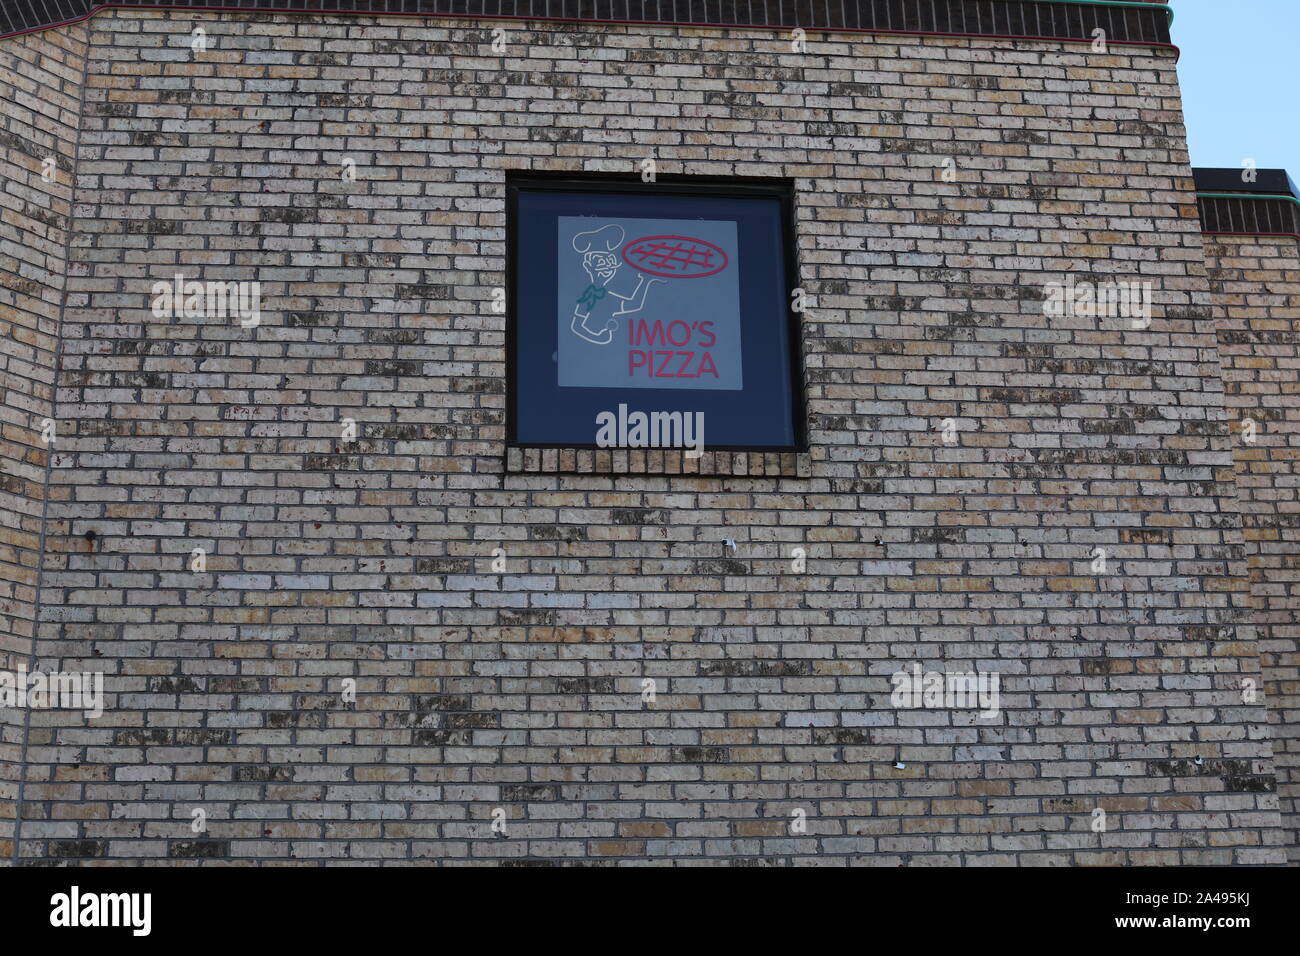 Louis, Missouri / STATI UNITI D'America - 12 Ottobre 2019: IMO's Pizza logo su un muro di mattoni. Dell' Imo Franchising, Inc è uno dei " St Louis' più grandi catene alimentari del piz Foto Stock